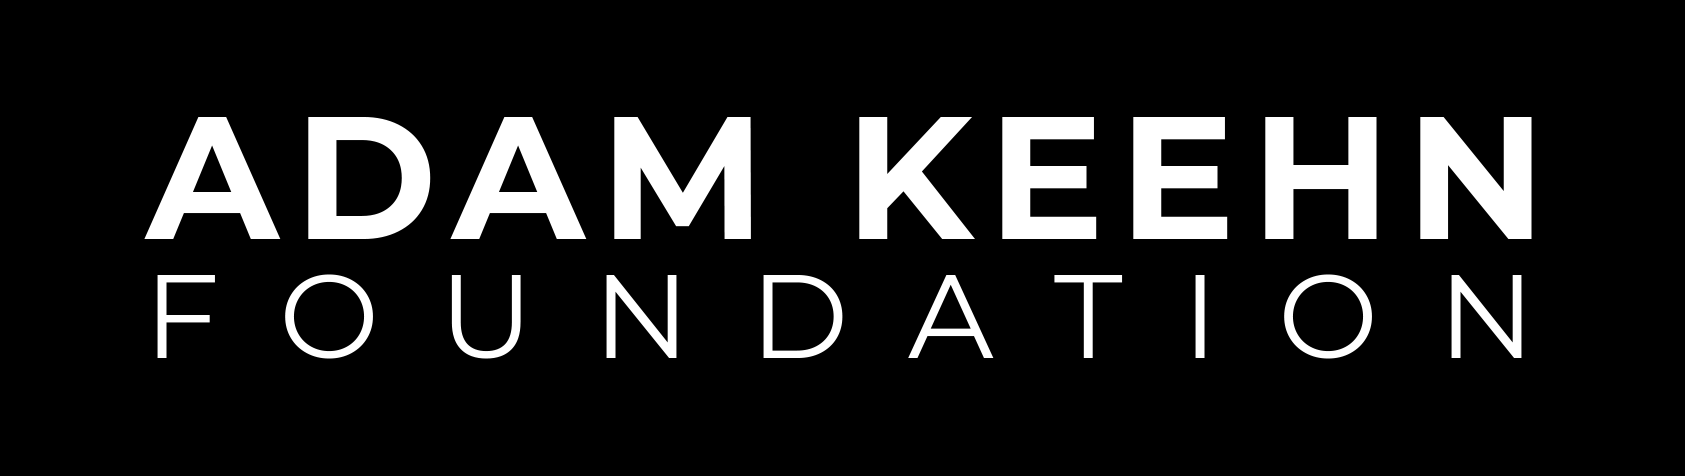 Logo ADAM KEEHN Foundation copy.png